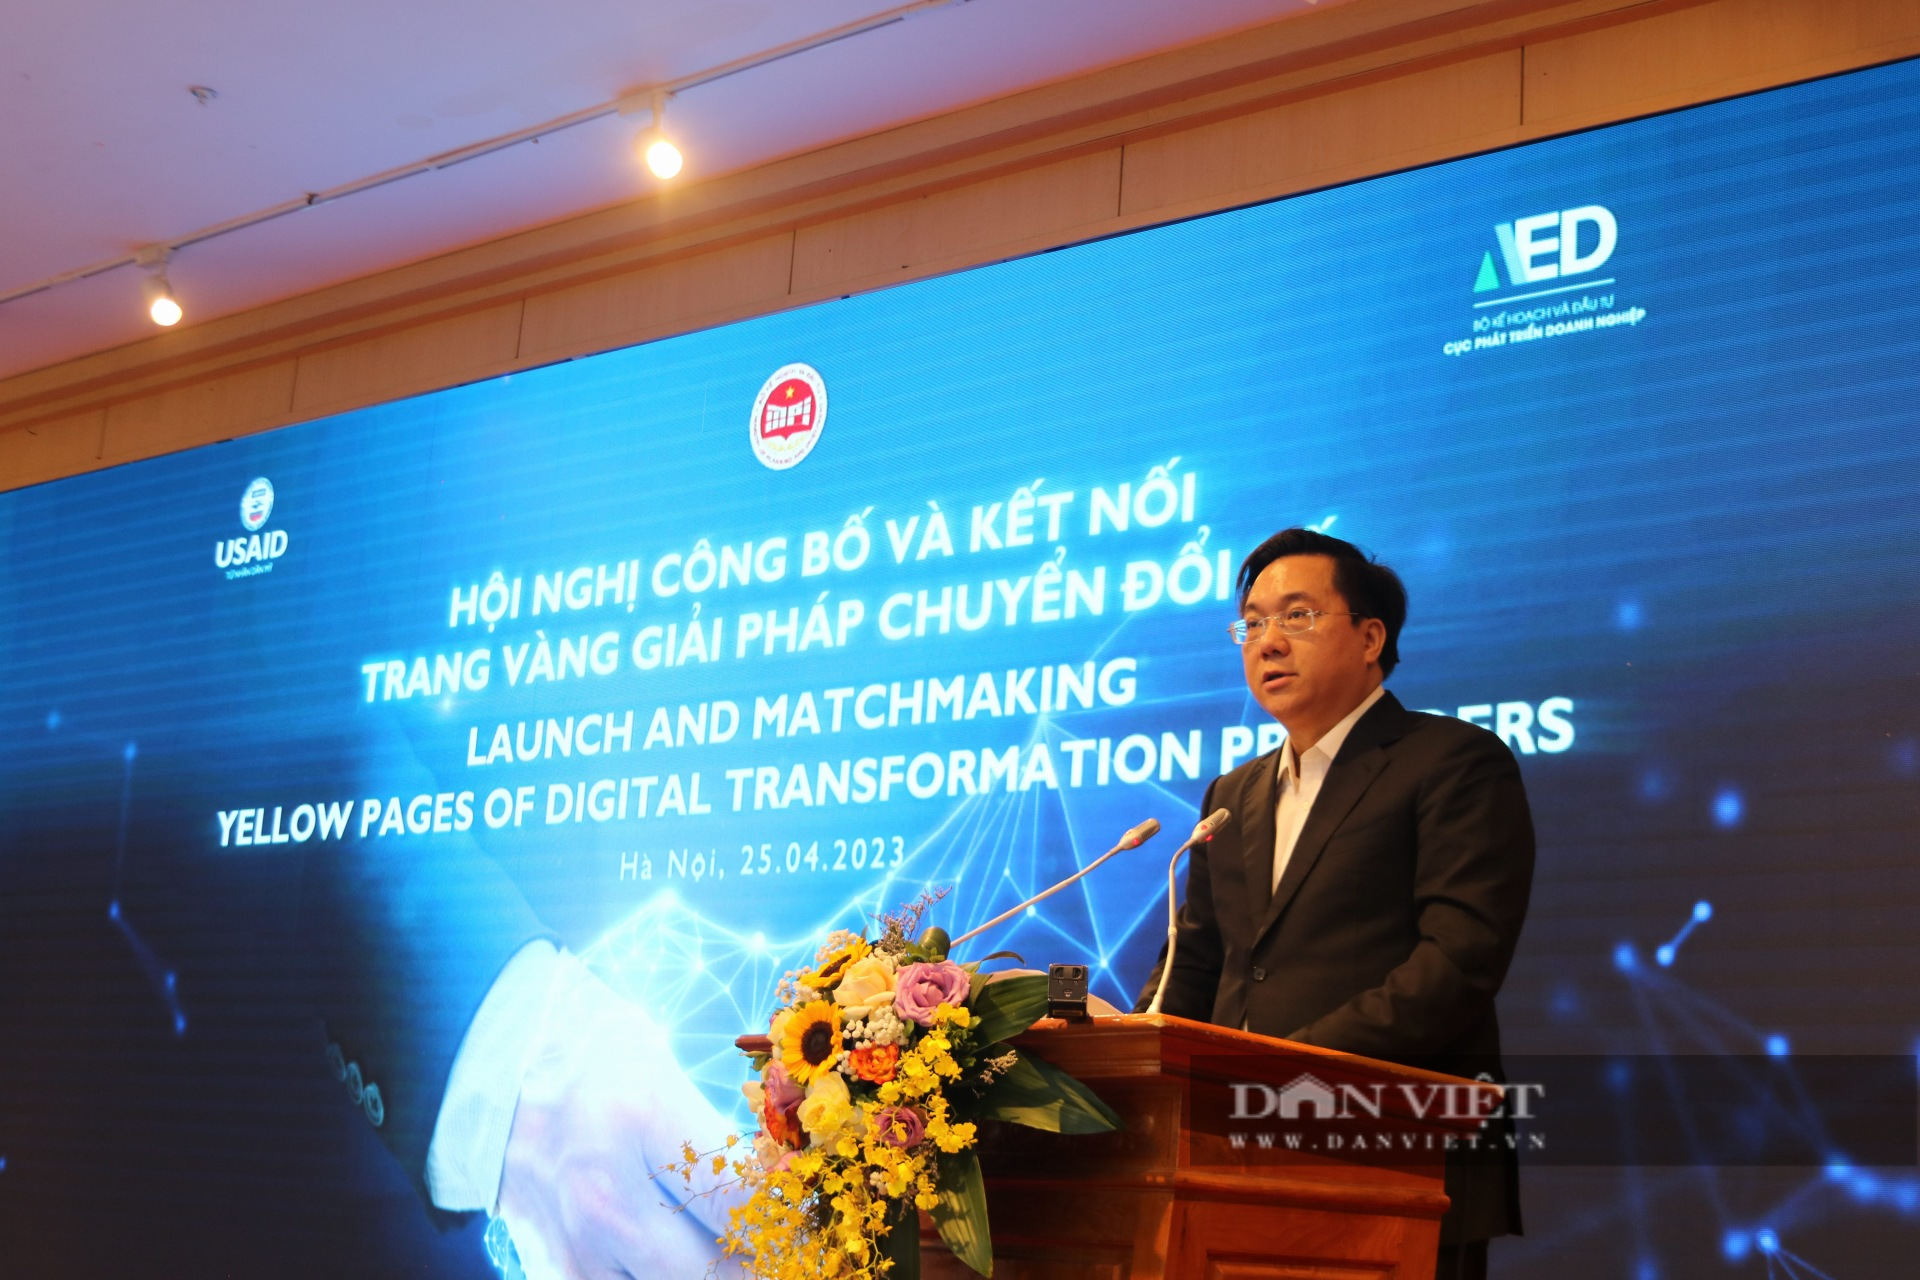 Lần đầu công bố Trang vàng giải pháp chuyển đổi số cho doanh nghiệp Việt Nam - Ảnh 1.